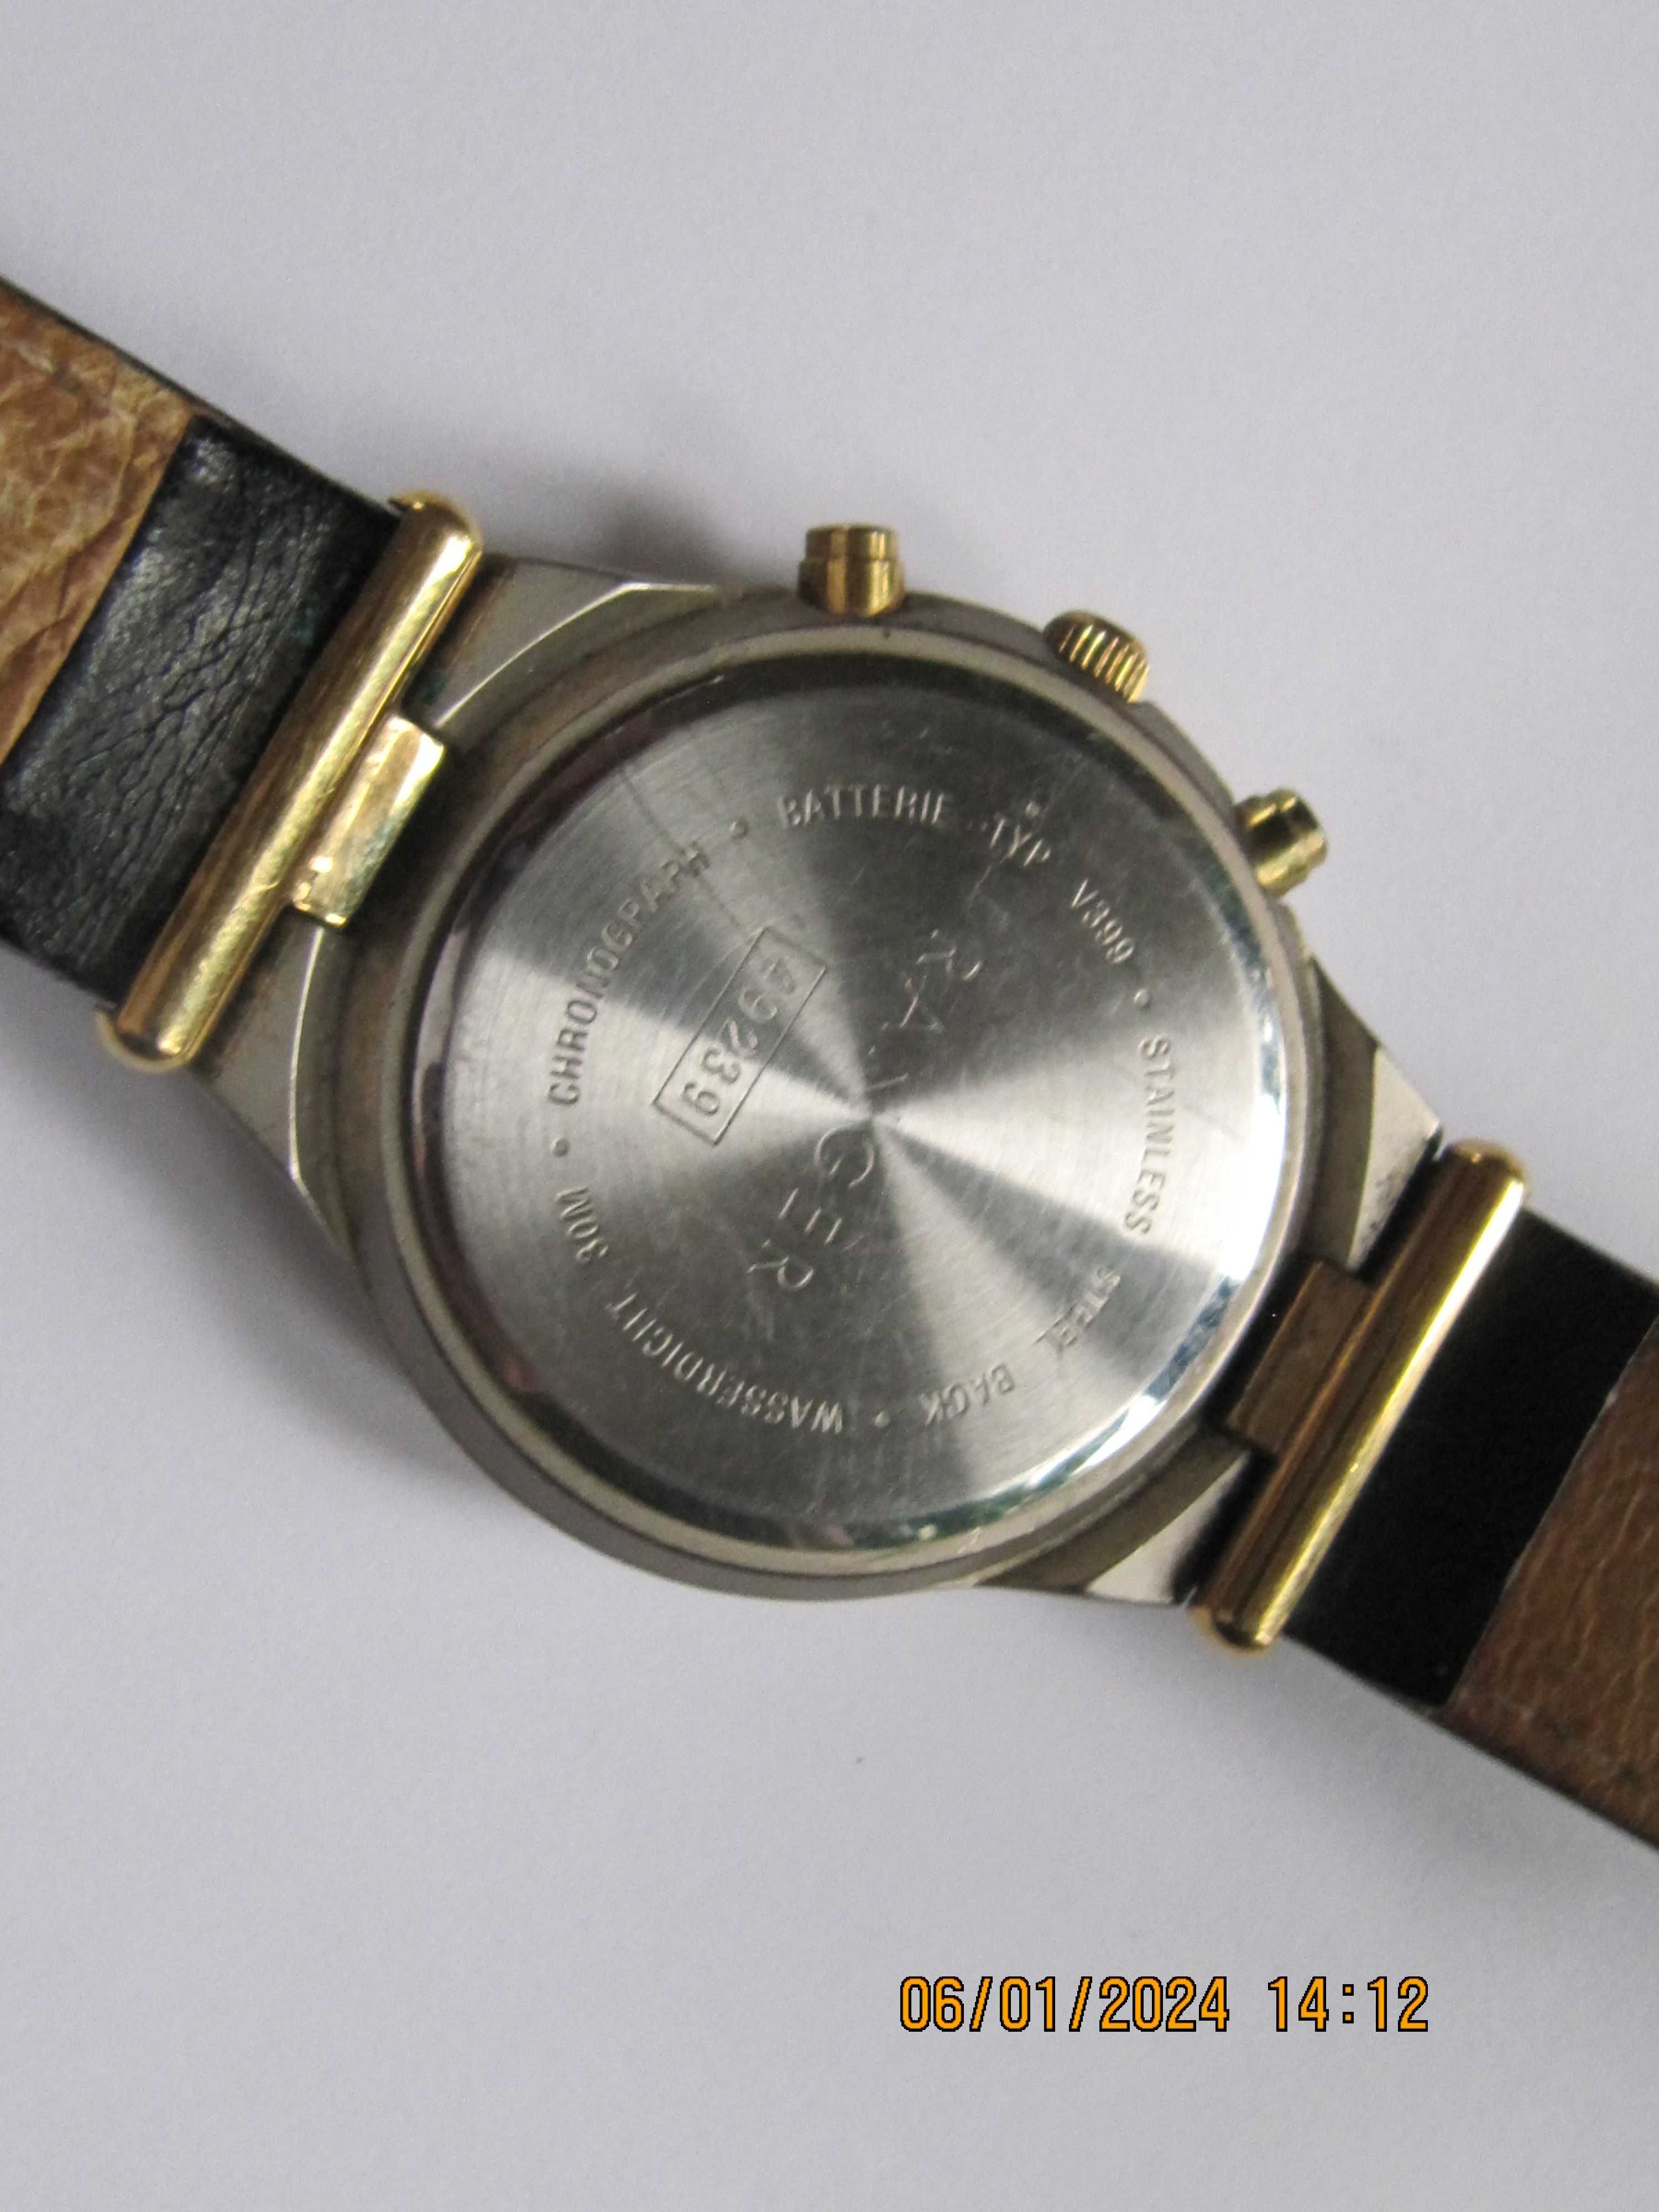 Ranger chrono sport oryginalny zegarek